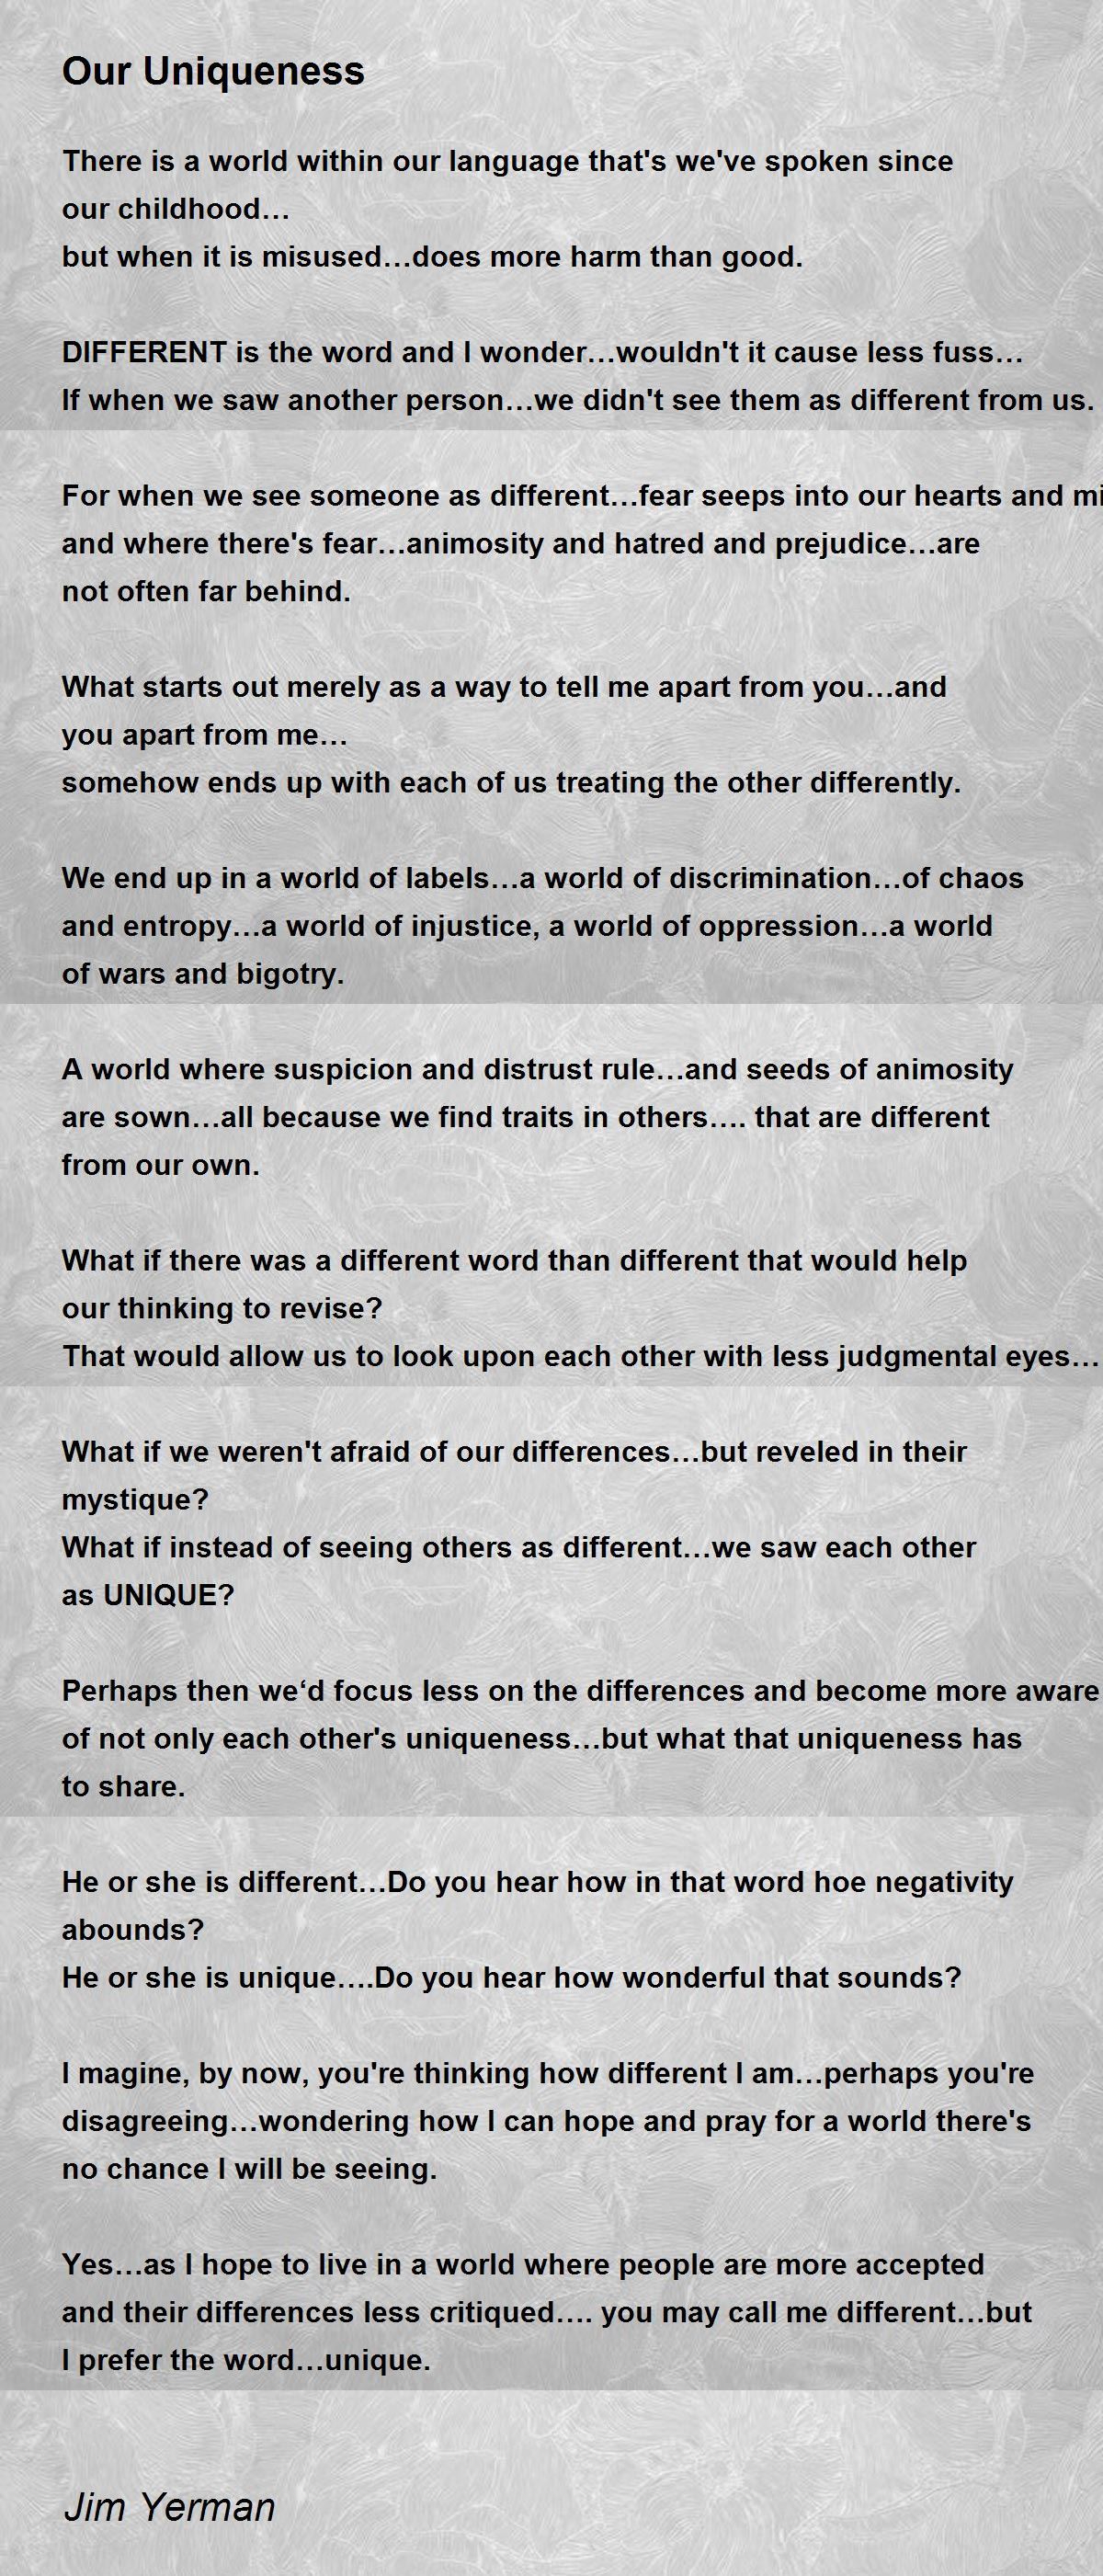 Our Uniqueness by Jim Yerman - Our Uniqueness Poem